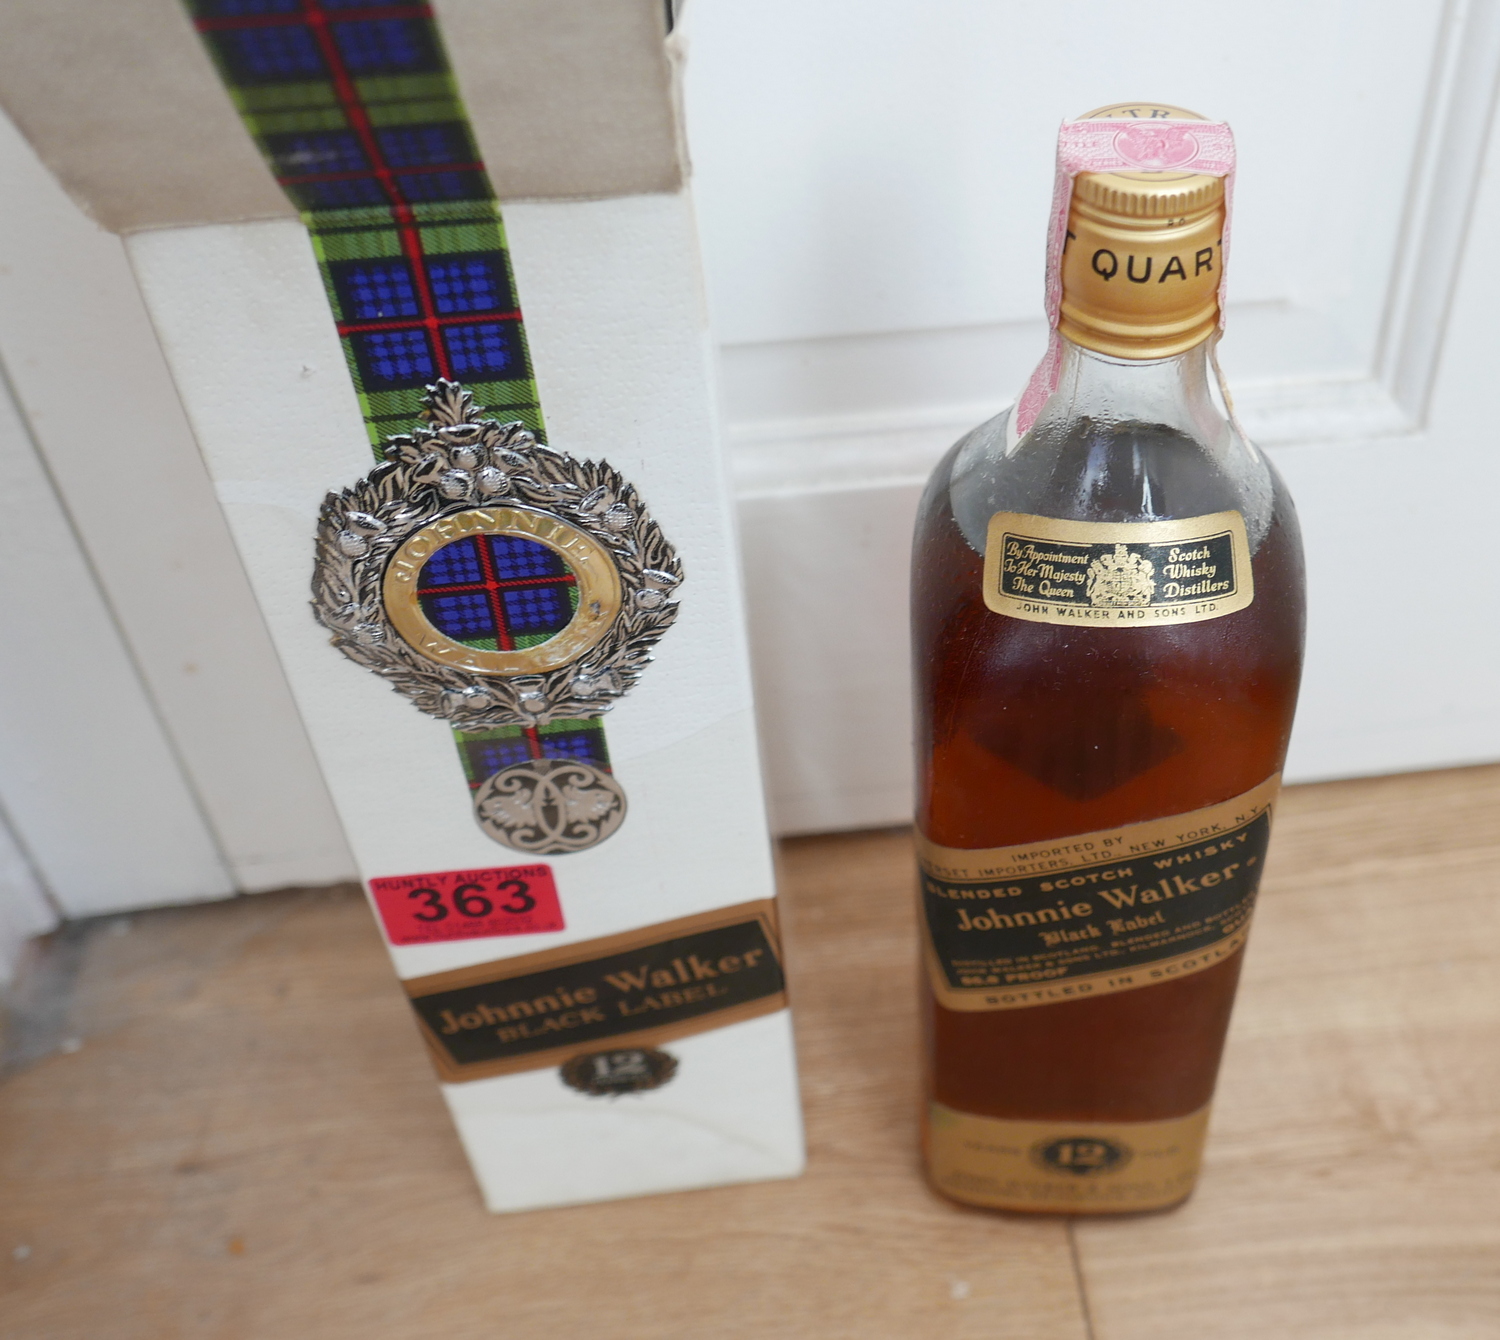 Vintage Boxed Quart Bottle of Johnnie Walker Black Label Whisky.